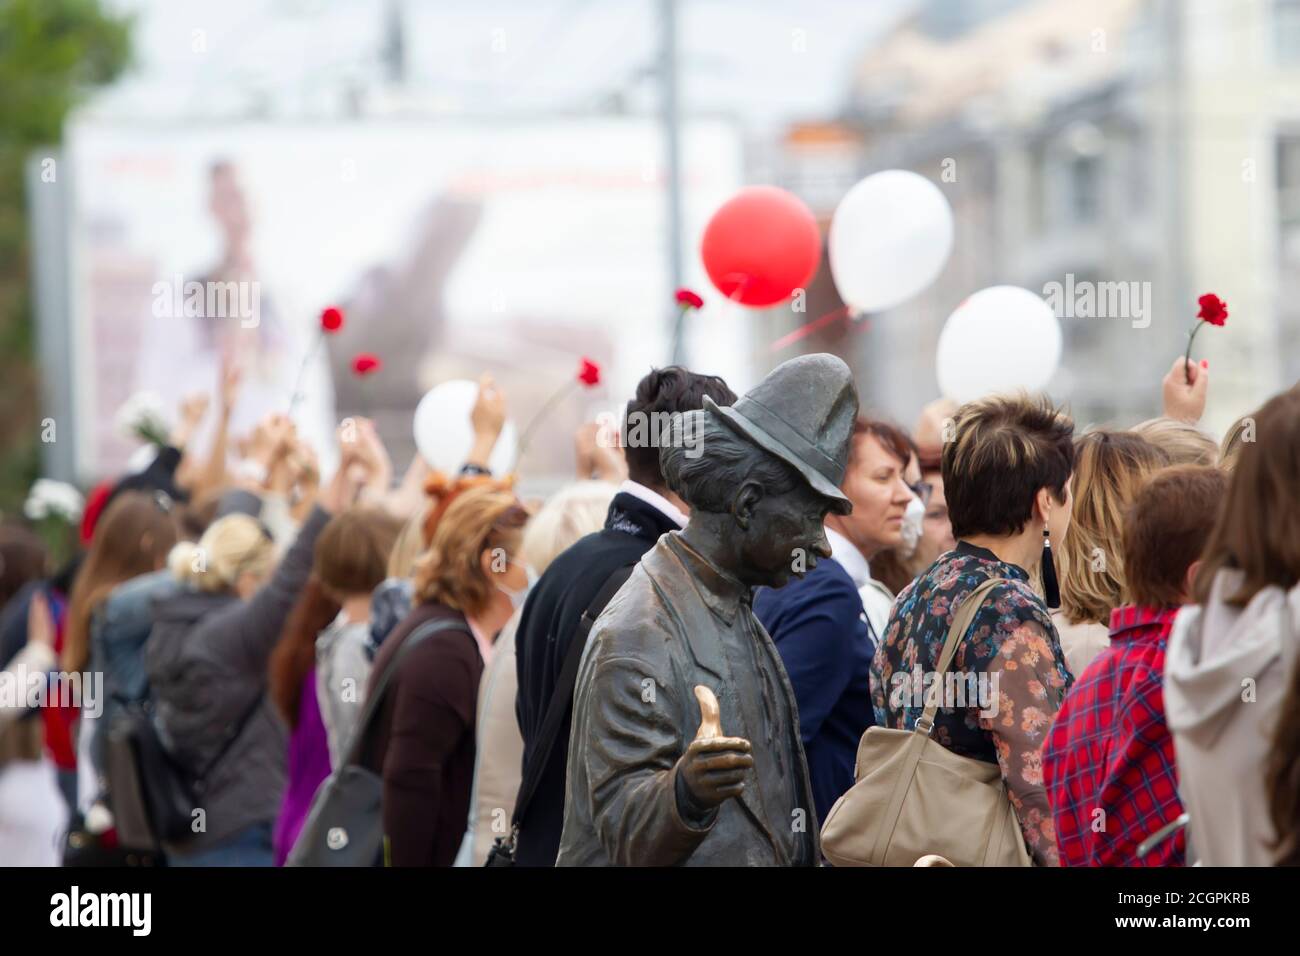 Bélarus, Gomel, 12 août 2020. Les rues de la ville. Protestation populaire contre Lukashenka. Rassemblement pacifique en Biélorussie contre le dictateur. Femmes a Banque D'Images